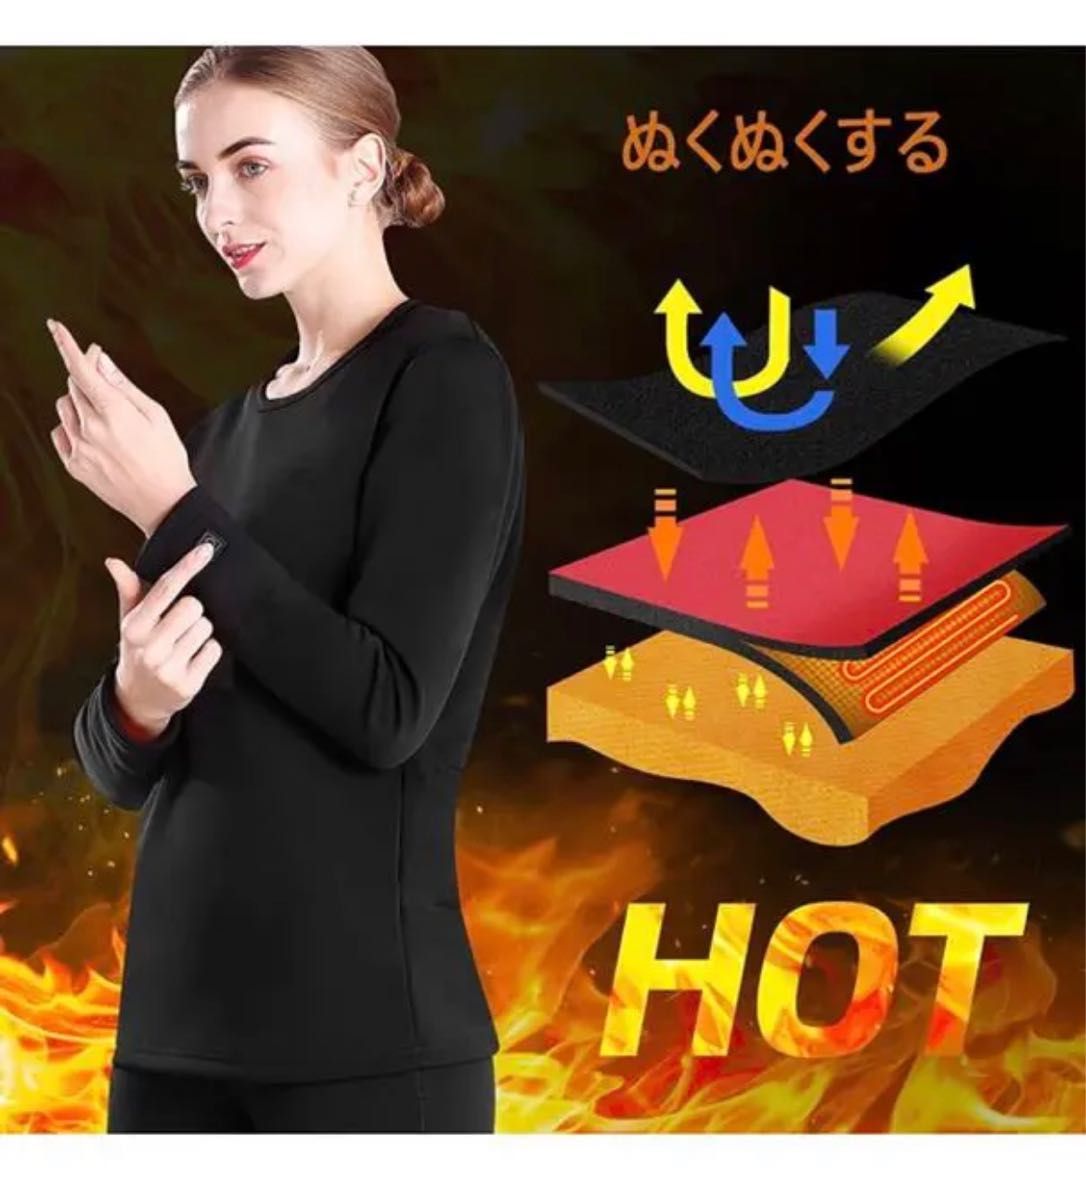 電熱インナーシャツ 長袖 保温 防寒 温度調節機能付き ヒーター付きシャツ 保温 防寒 アウトドア